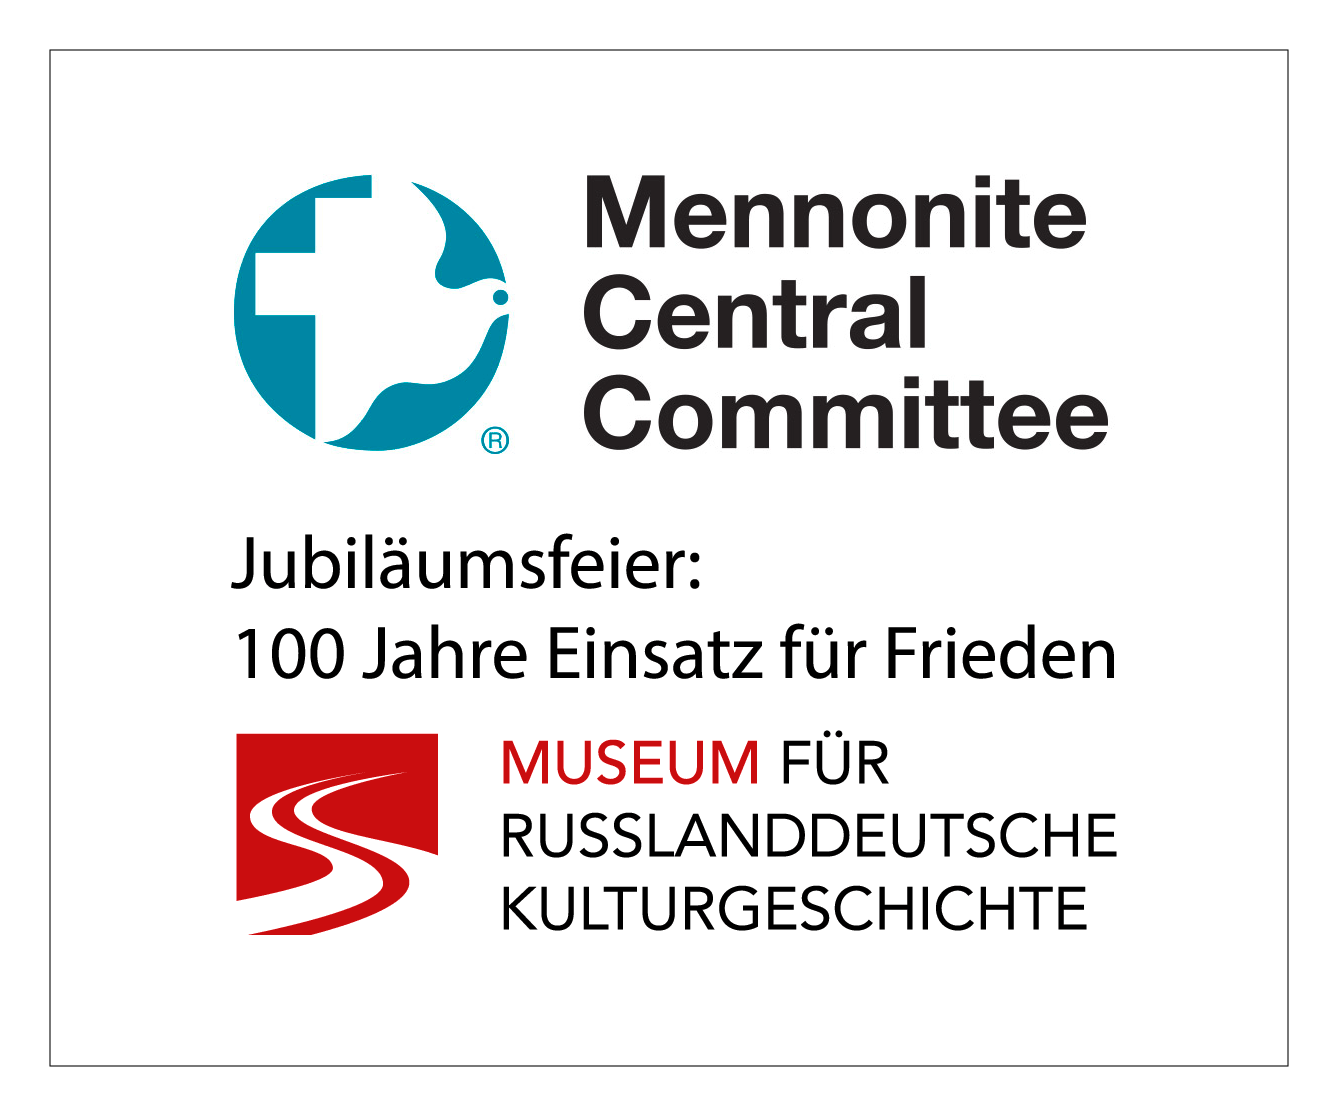 Jubliäumsfeier 100 Jahre Einsatz für den Frieden, Mennonite Central Committee (MCC), im Museum für russlanddeutsche Kulturgeschichte.